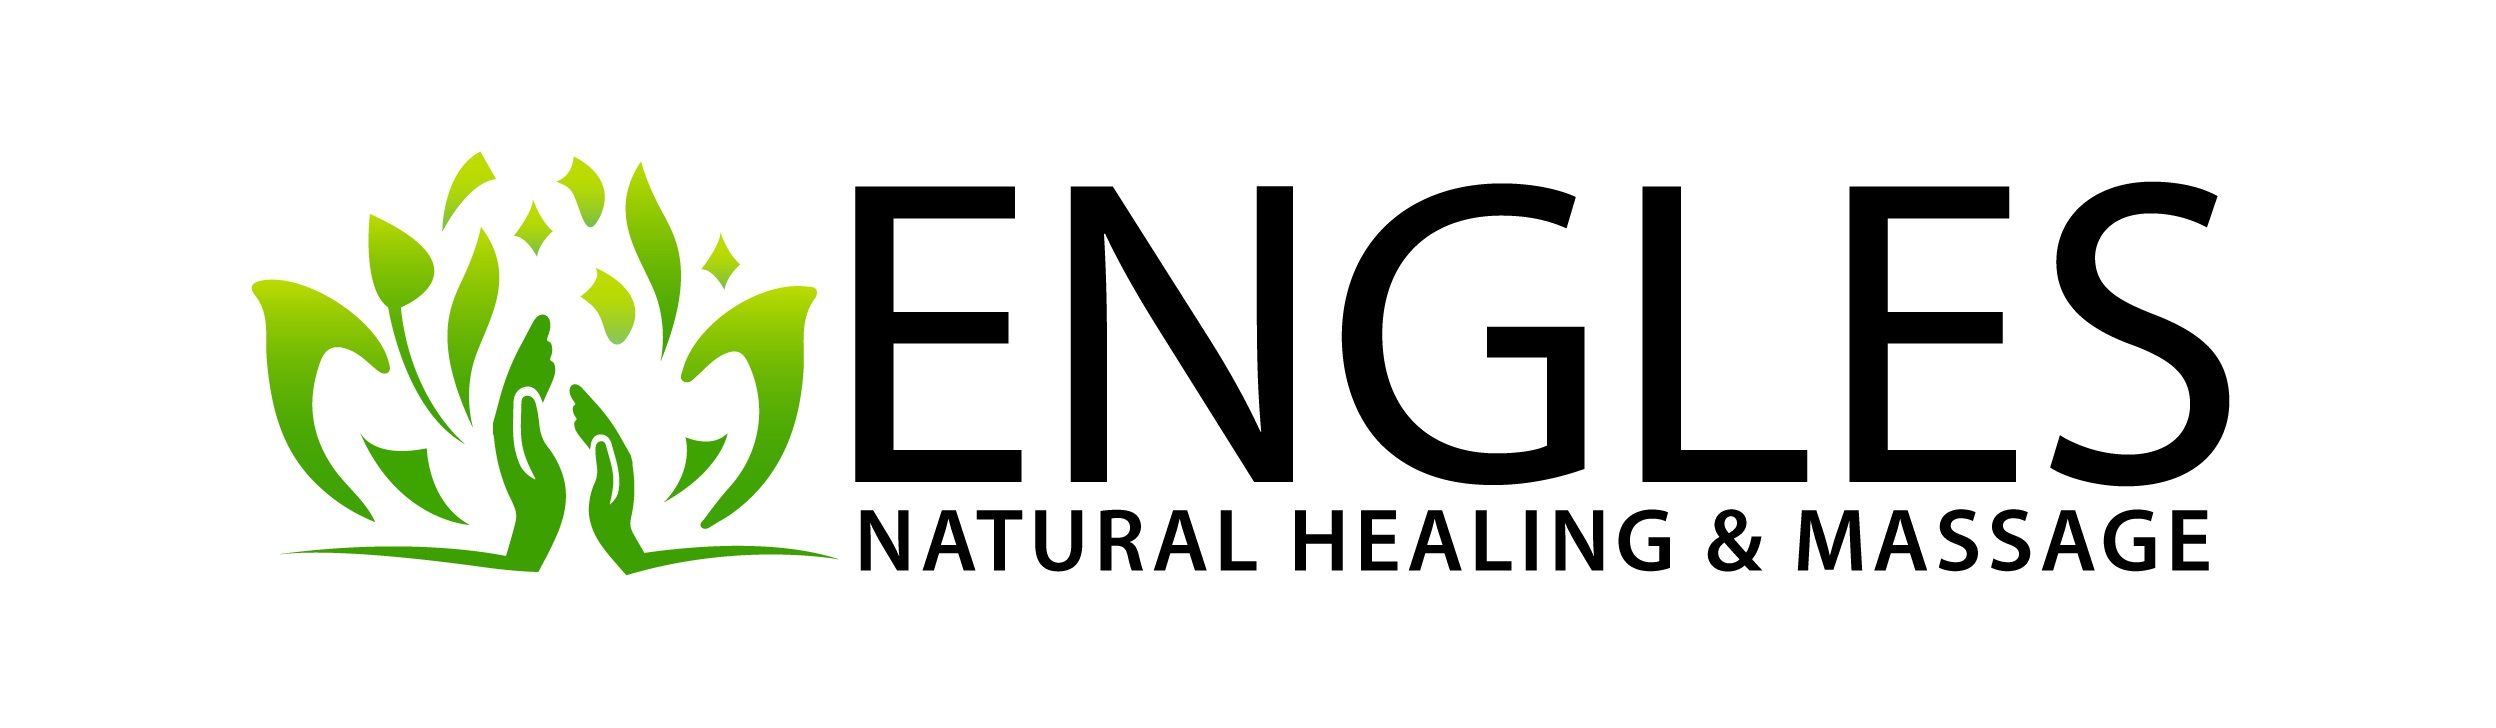 Engles Natural Healing